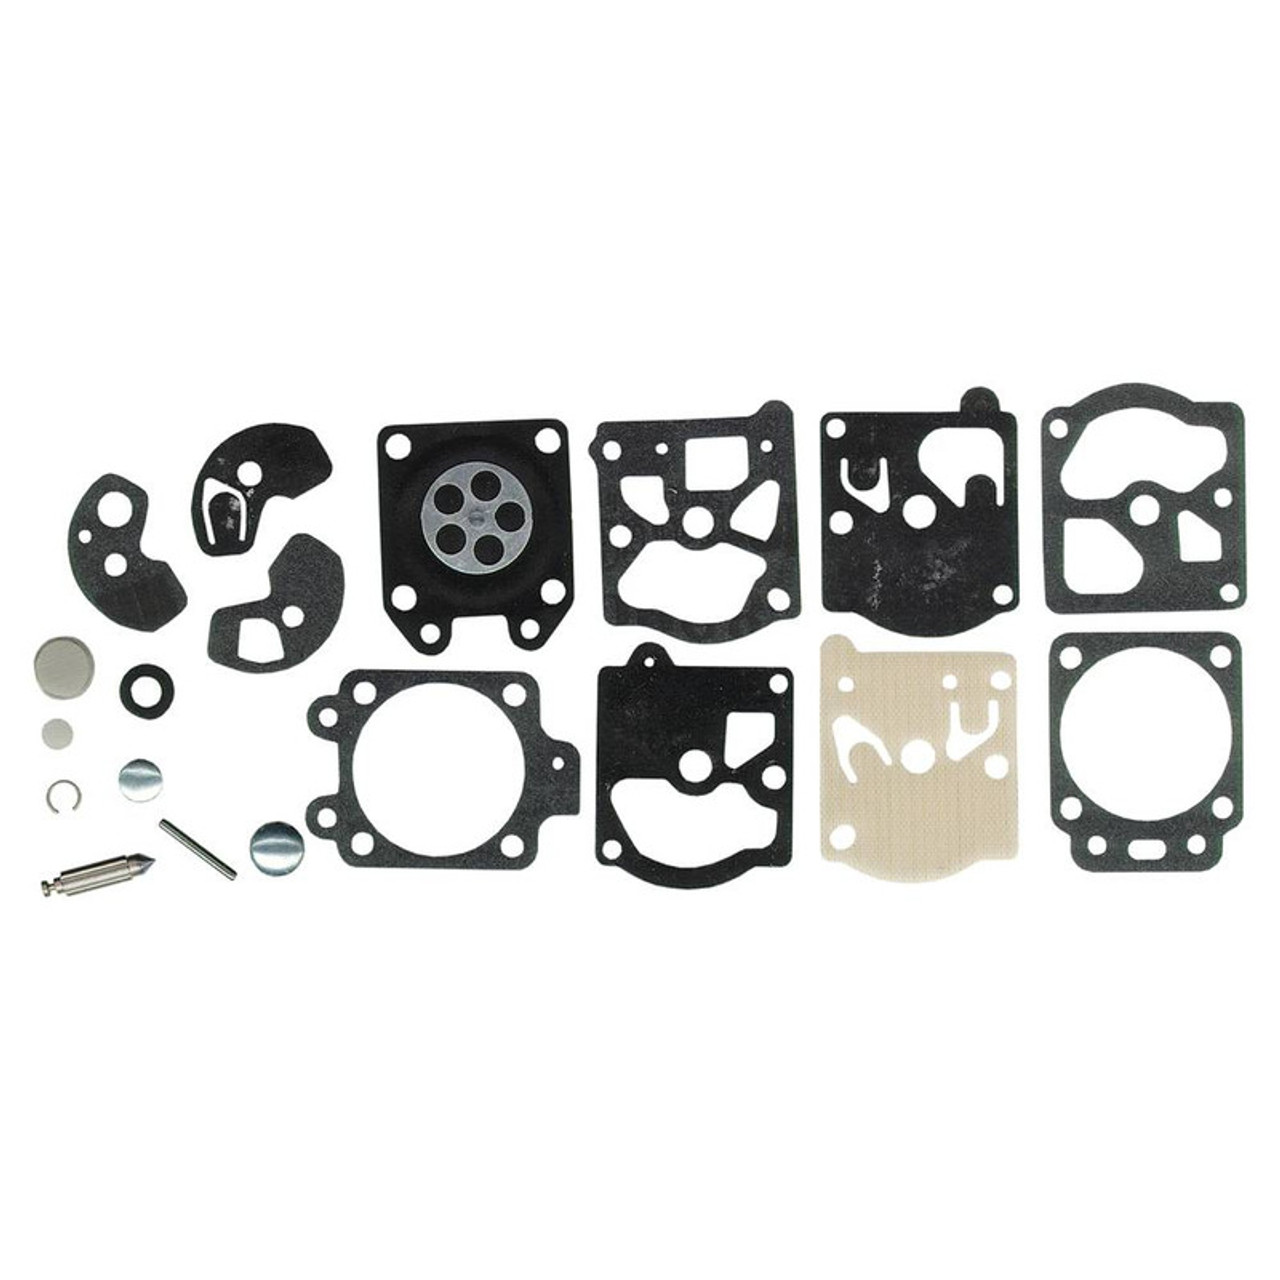 Carburetor Rebuild Kit for Efco 2318-283 2318-285 2318-303 2318-353 2318-441 2318-442 2318-450 3300-225 3301-037